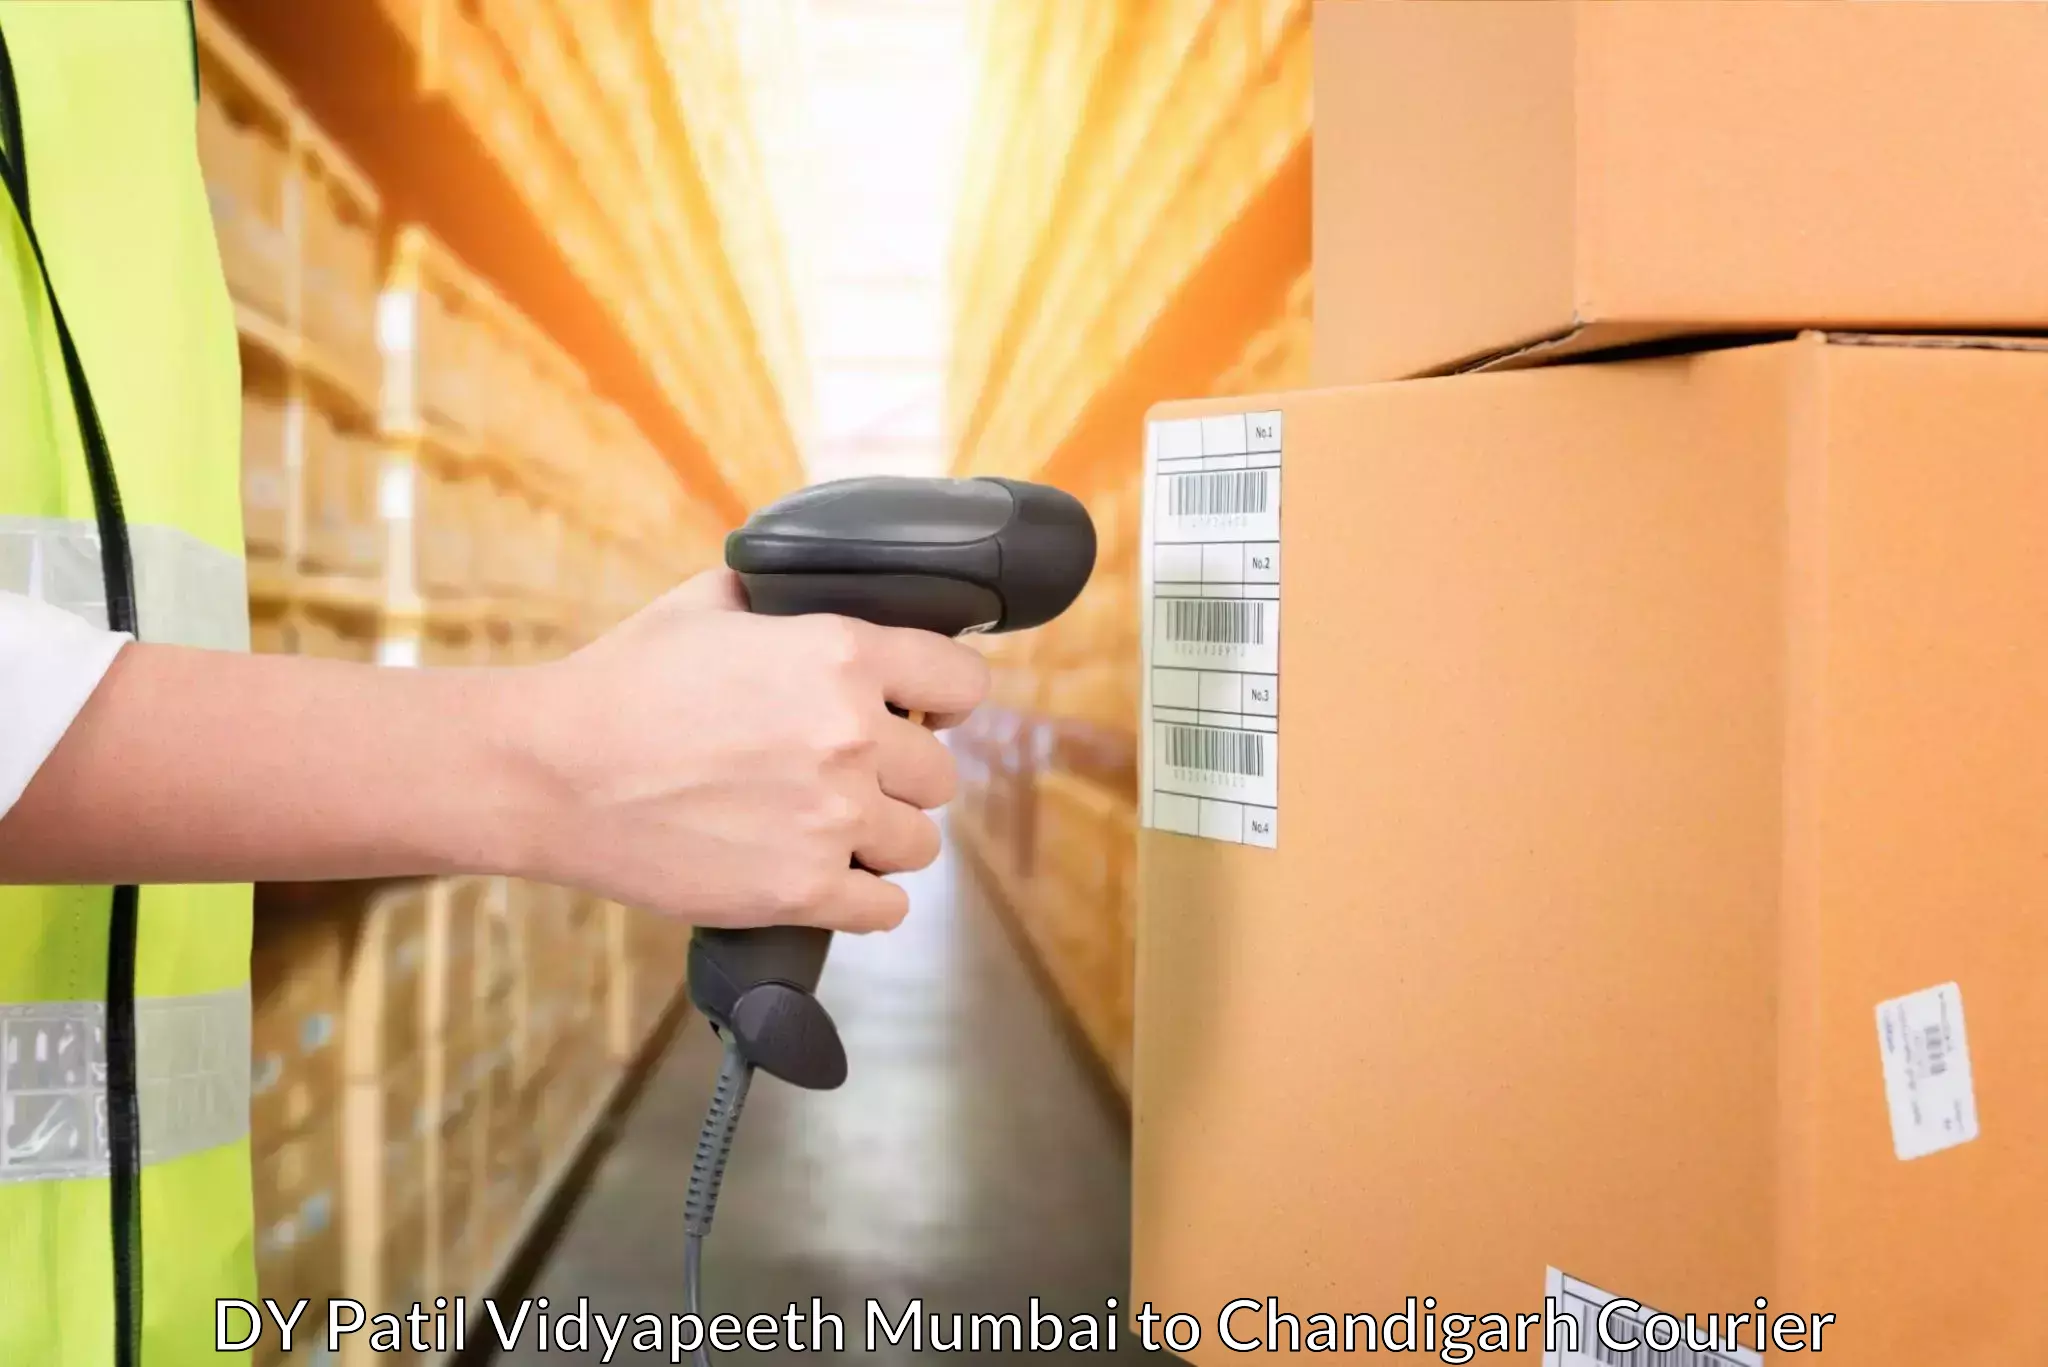 Customized shipping options DY Patil Vidyapeeth Mumbai to Chandigarh